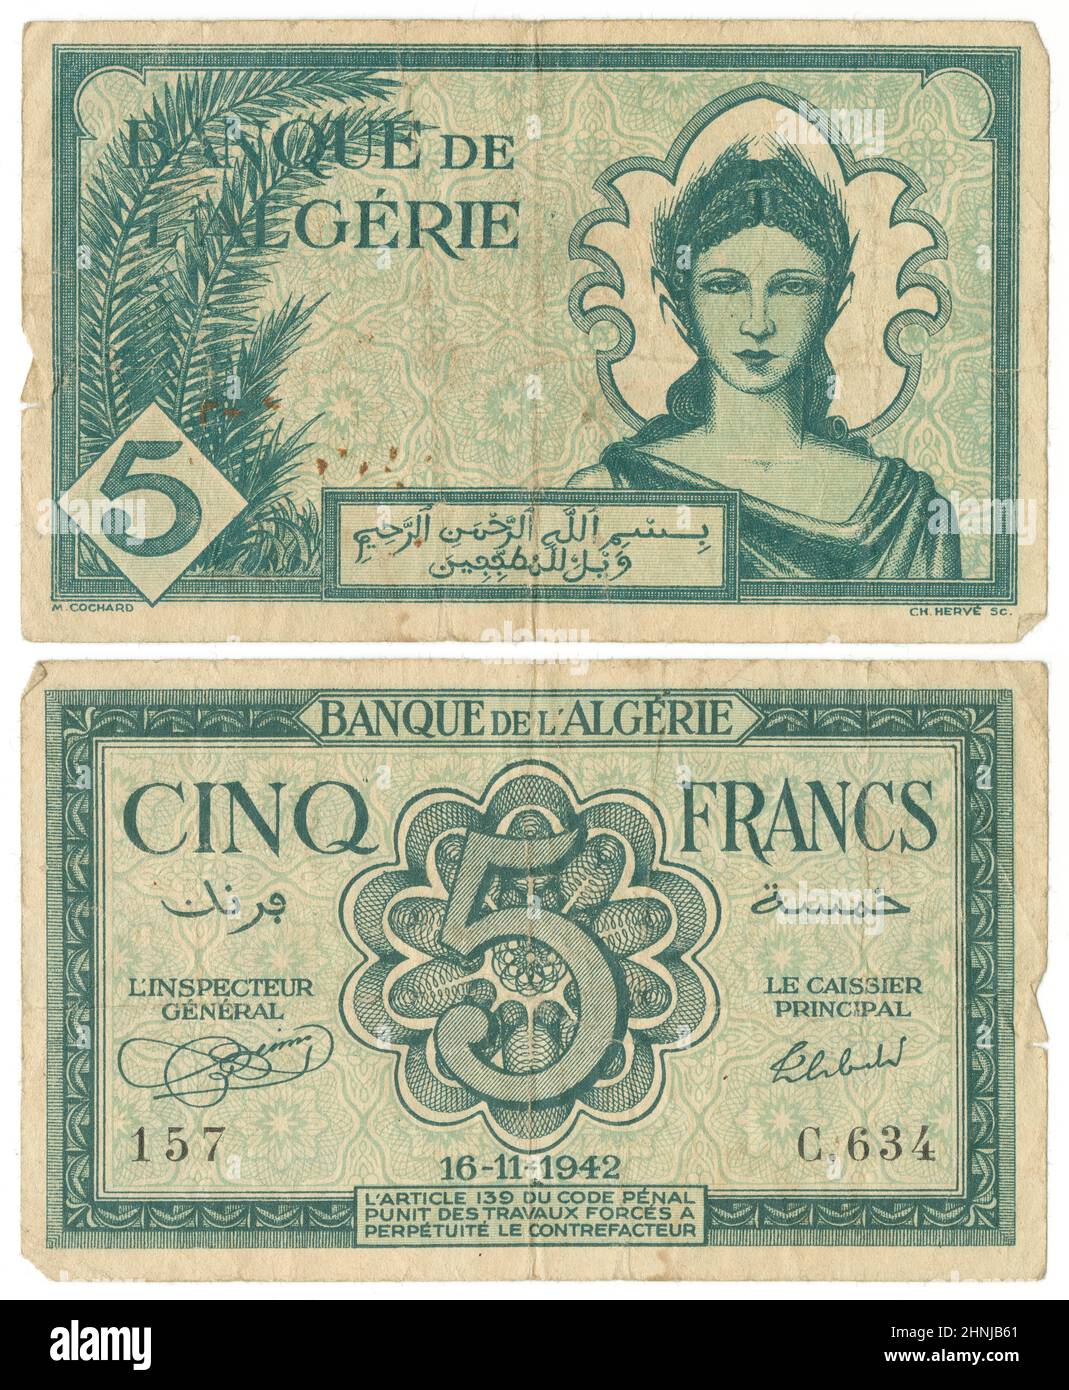 1942, Five Francs Note, Algerien, Vorderseite und Rückseite. Tatsächliche Größe: 97mm x 59mm. Stockfoto